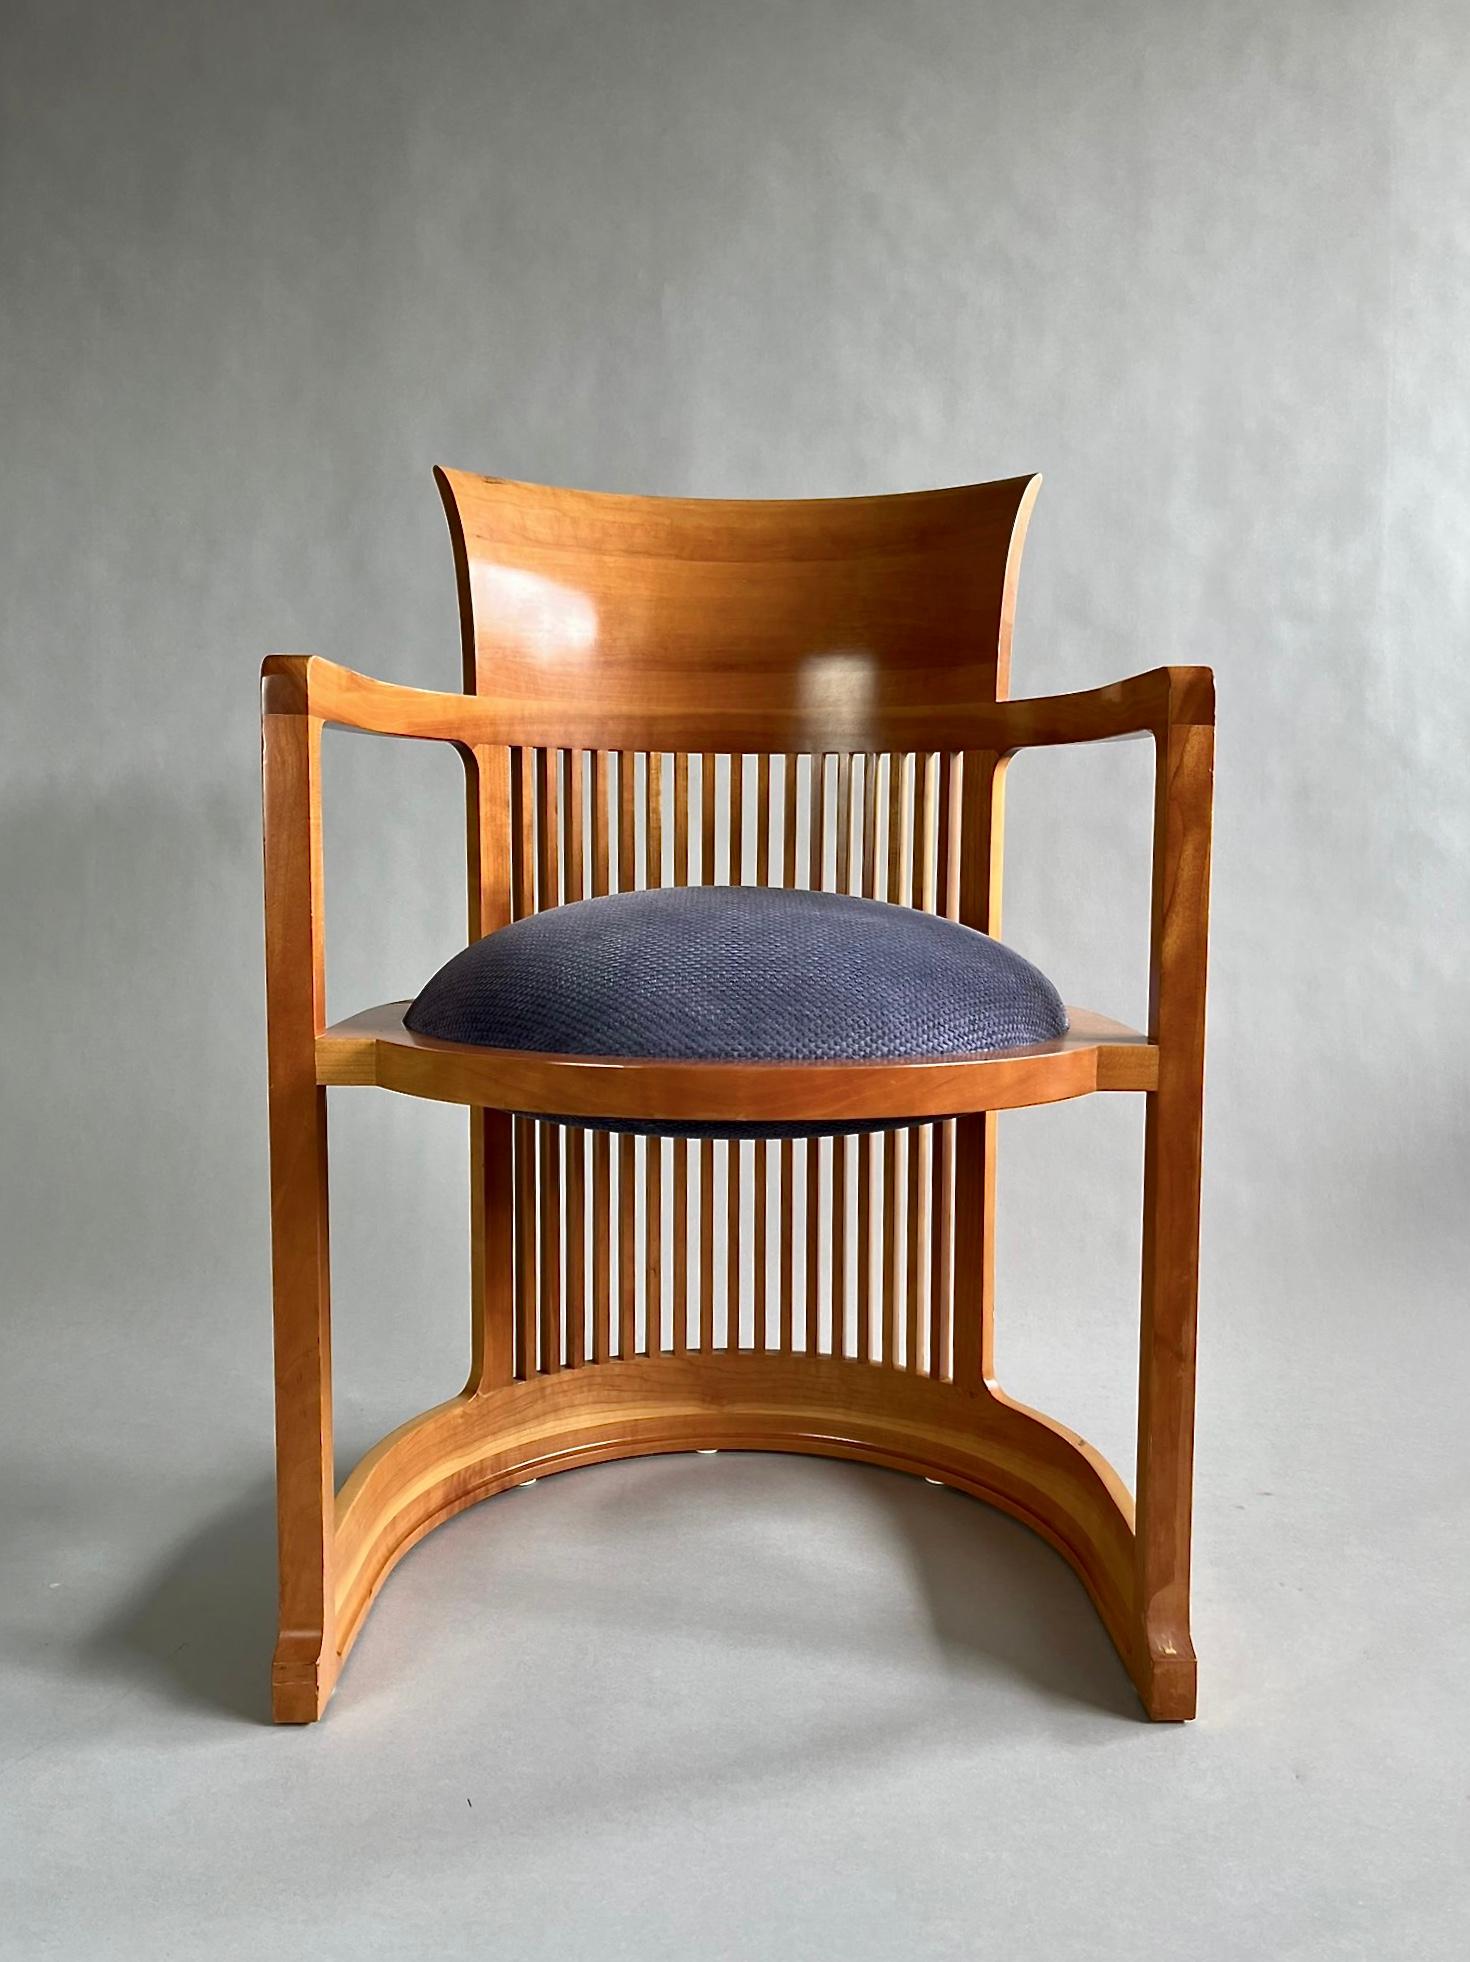 Ensemble de quatre chaises Iconic Barrel, conçues par Frank Lloyd Wright en 1937 et produites par Cassina Italy à la fin des années 1980 et au début des années 1990. L'ensemble est en bon état vintage comme le montrent les images.
Les quatre